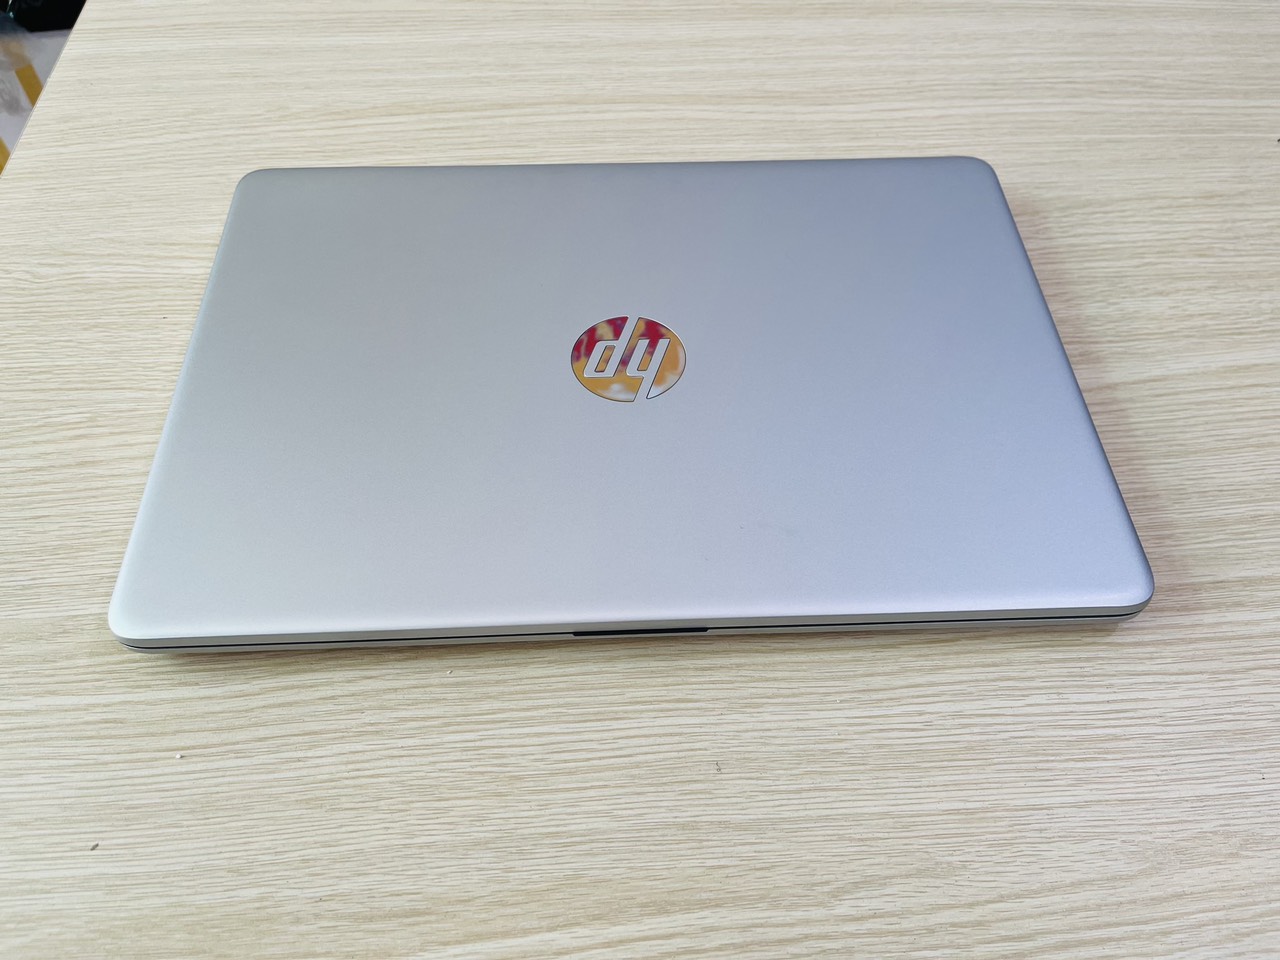 Laptop HP 14 dq2078 core i5 1135G7 Ram 8gb SSD 256gb 14 inch mỏng nhẹ nhỏ gọn giá rất rẻ (new nguyên seal)